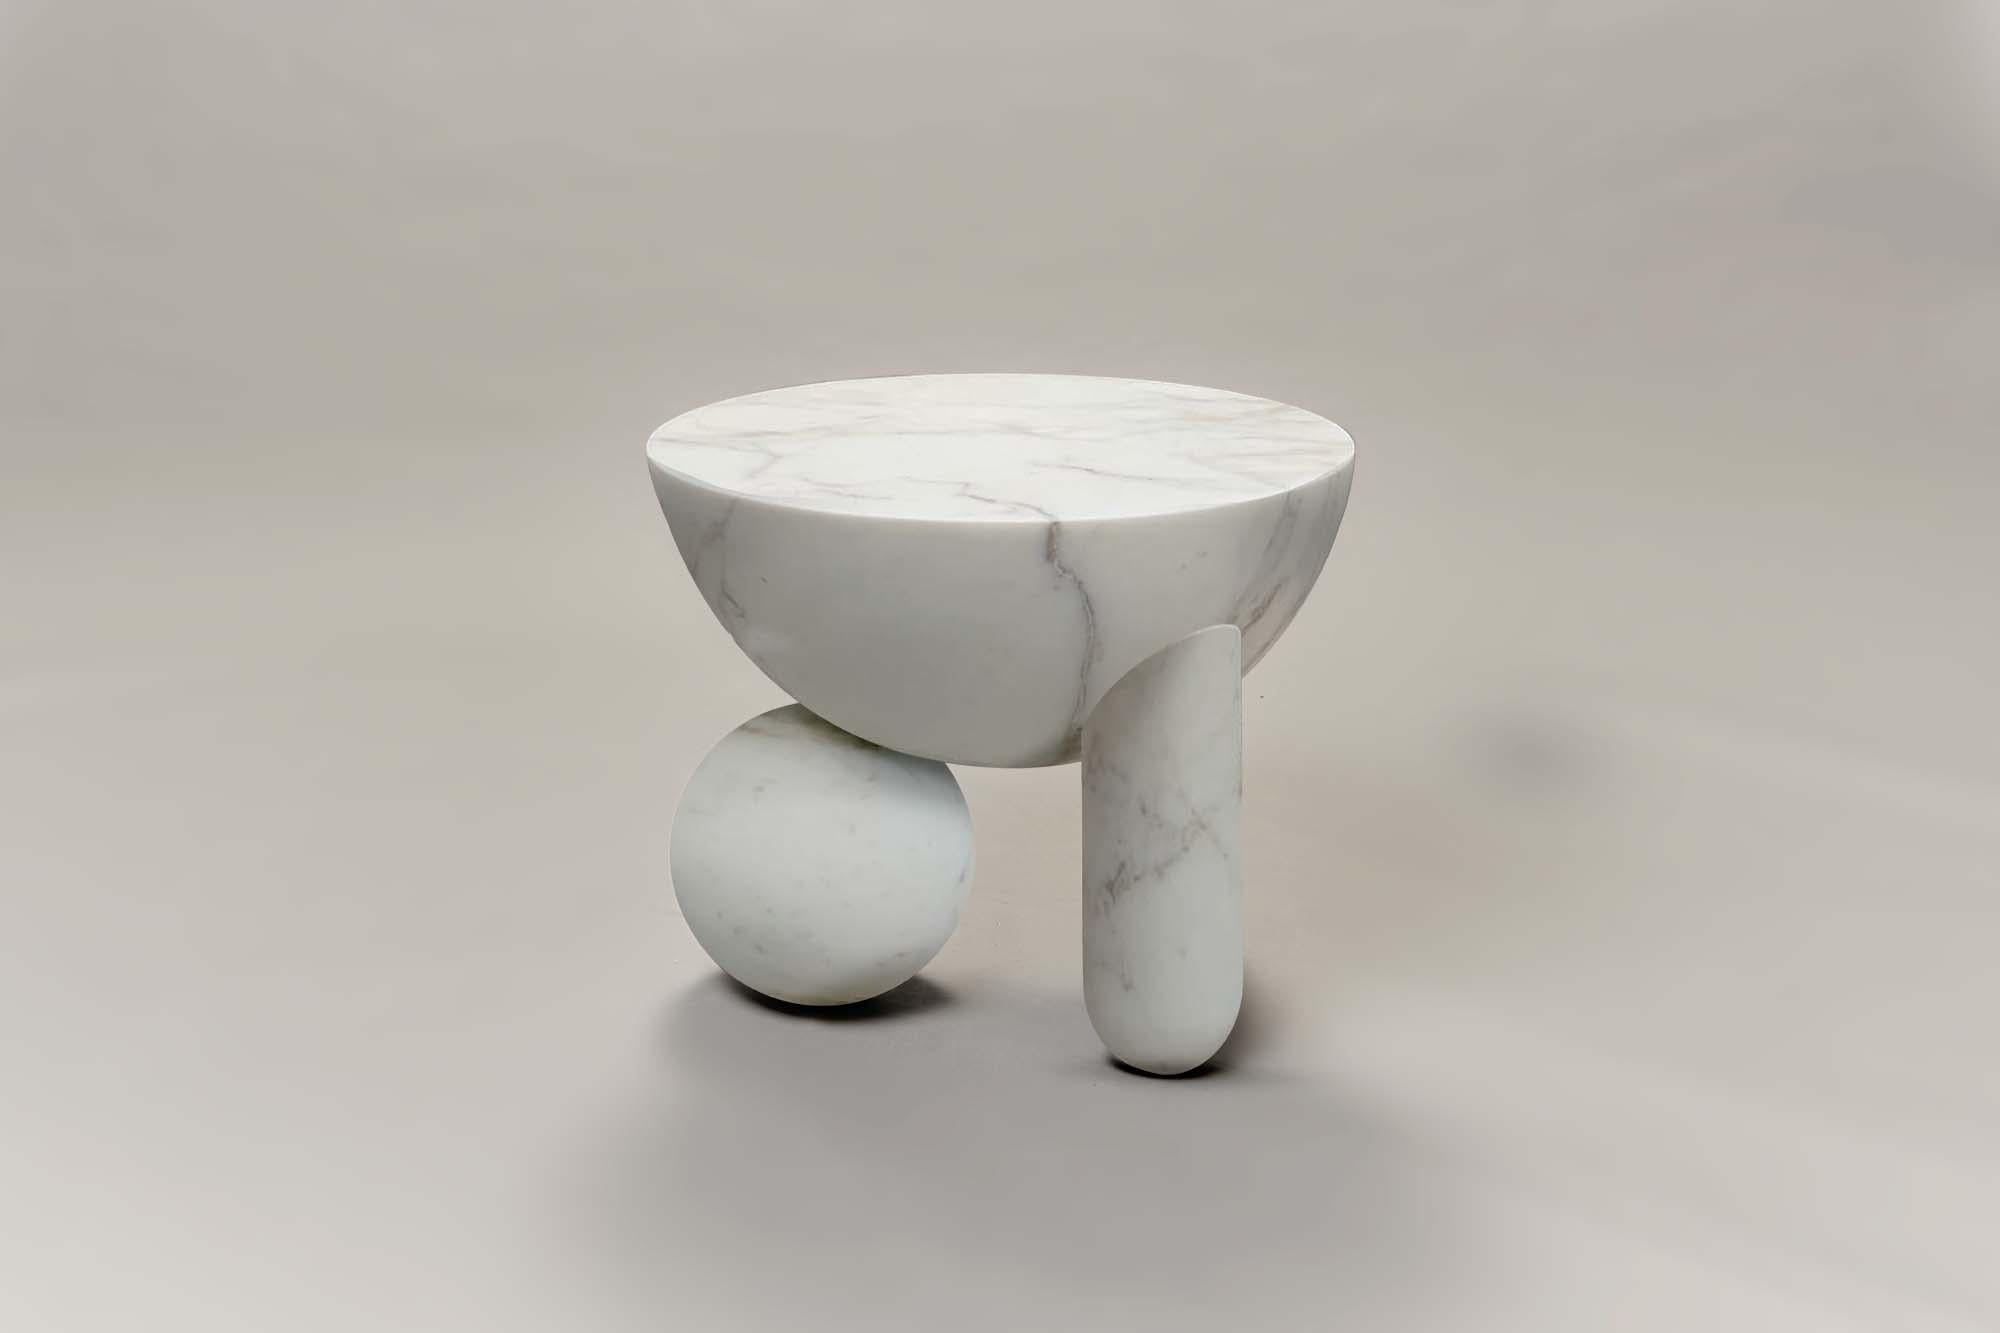 La petite table basse Profiterole est fabriquée en 3D à partir de marbre calacatta oro, soutenue par des sphères rondes en forme de dessert et des pieds semi-cuppés qui soutiennent un plateau arrondi. La table basse est également disponible en